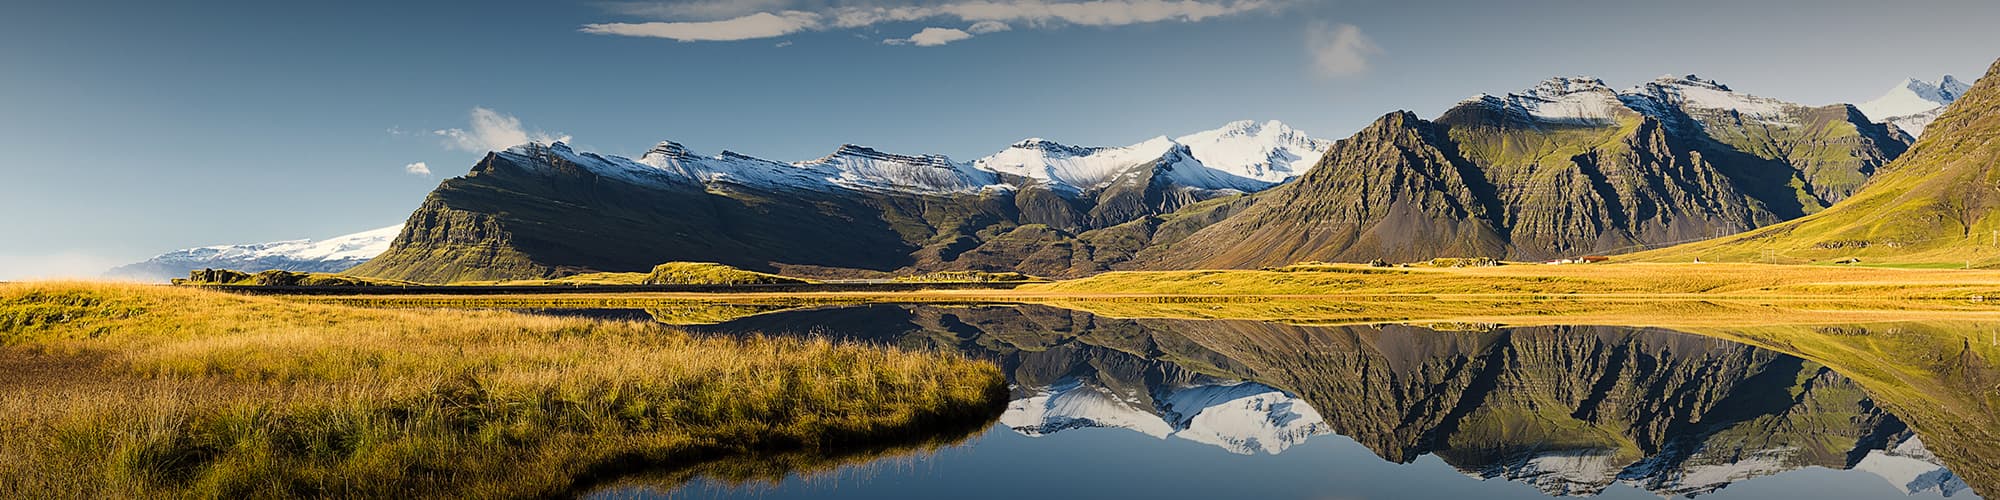 Croisière et voile Islande © Technotr / iStock